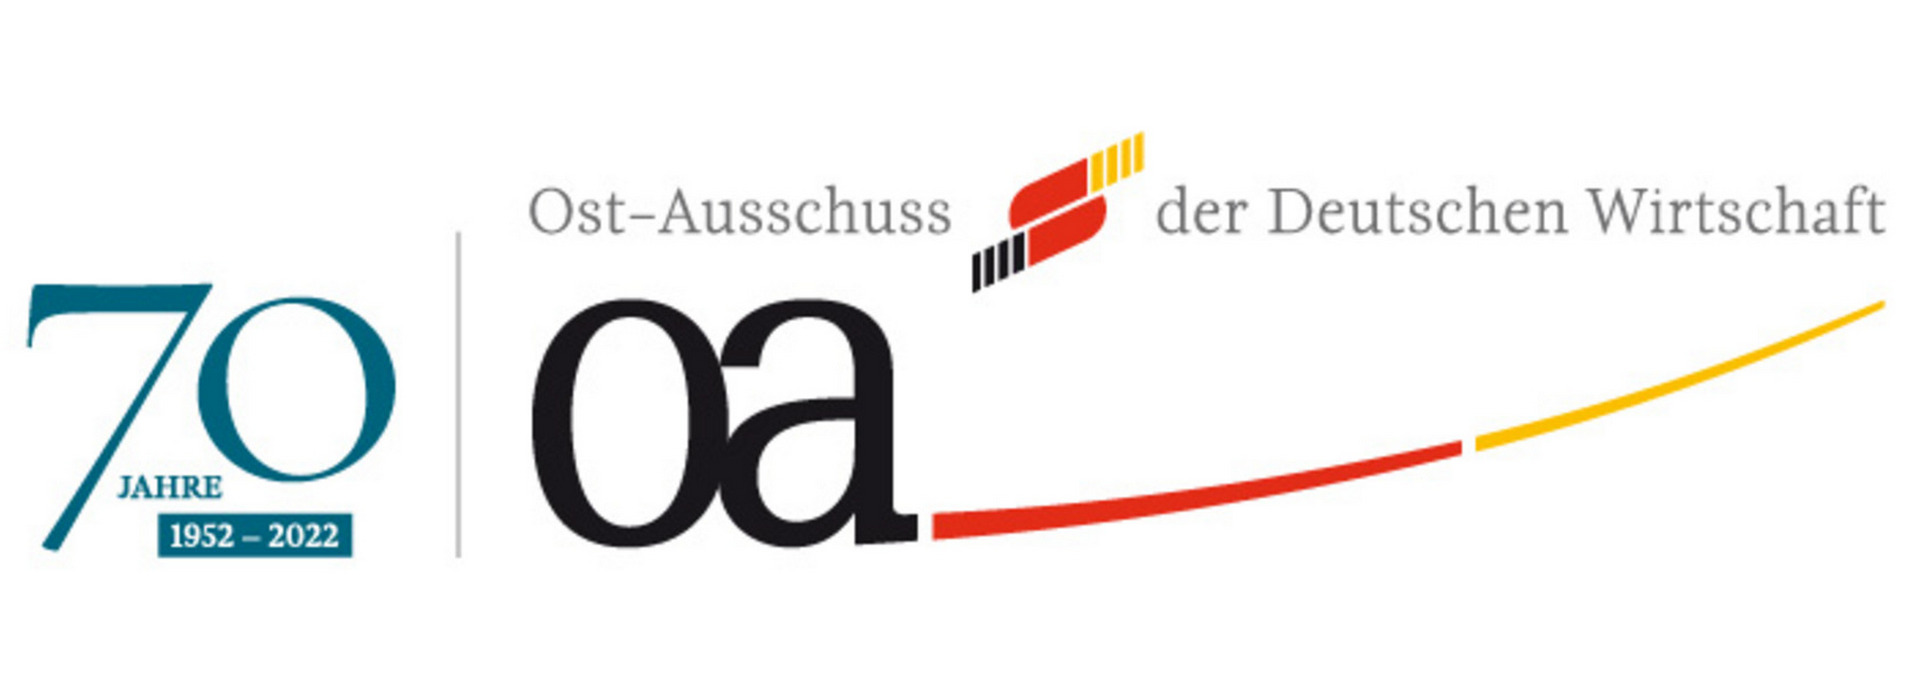 GOLAW Has Become a Member of the Leading German Business Association Ost-Ausschuss der Deutschen Wirtschaft